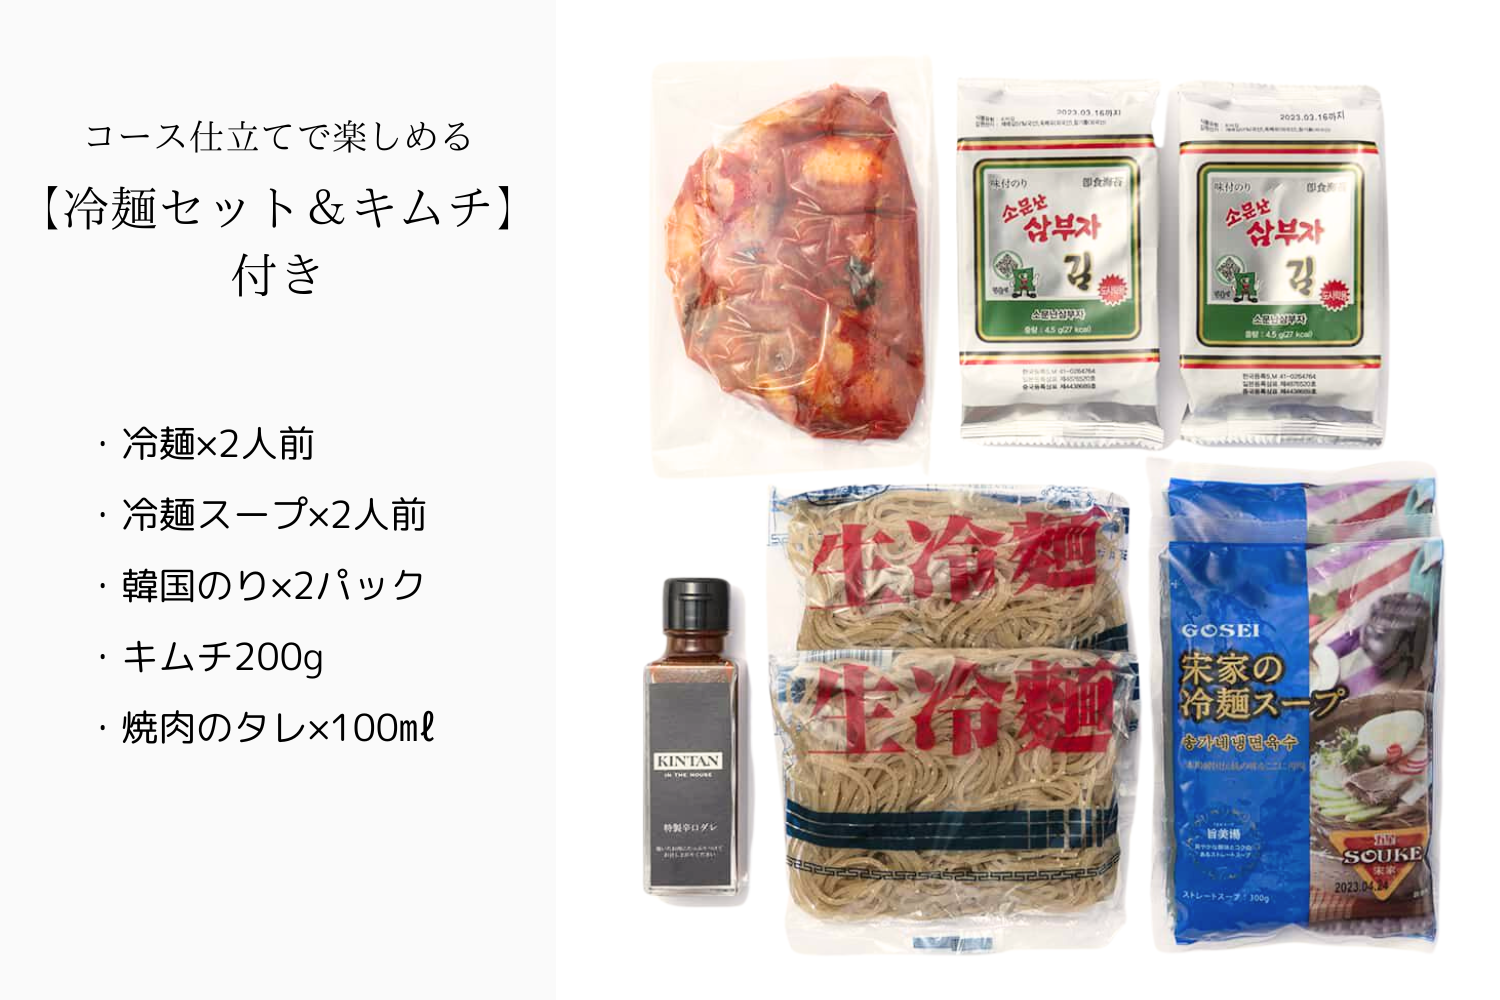 【ワイン付き】リッチ焼肉セット(合計510g)